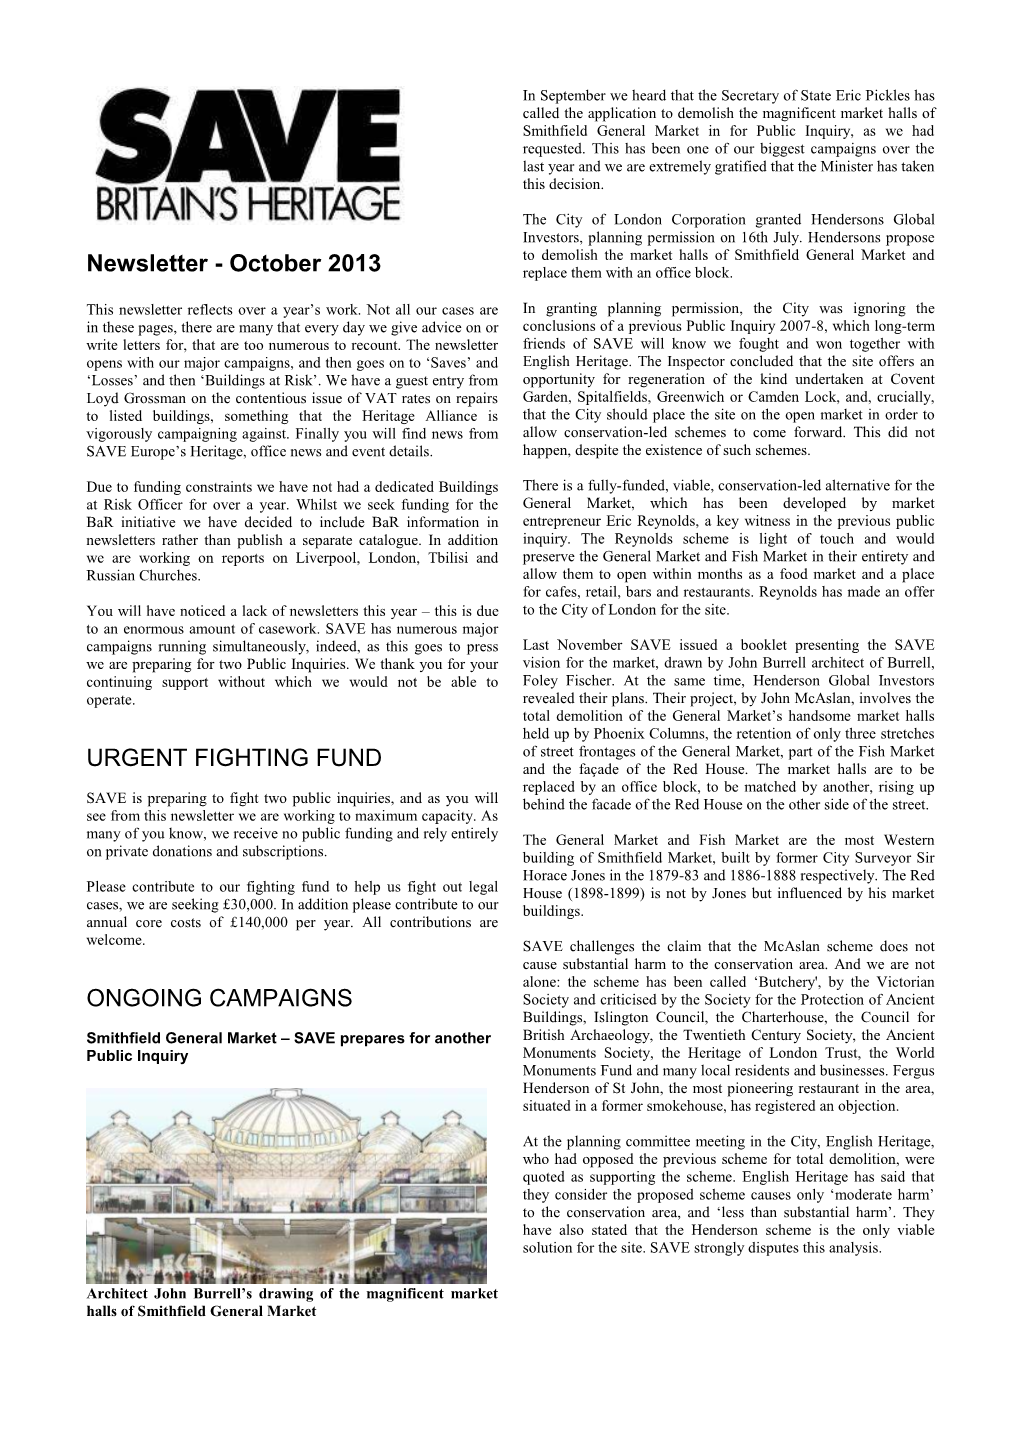 October 2013 Newsletter